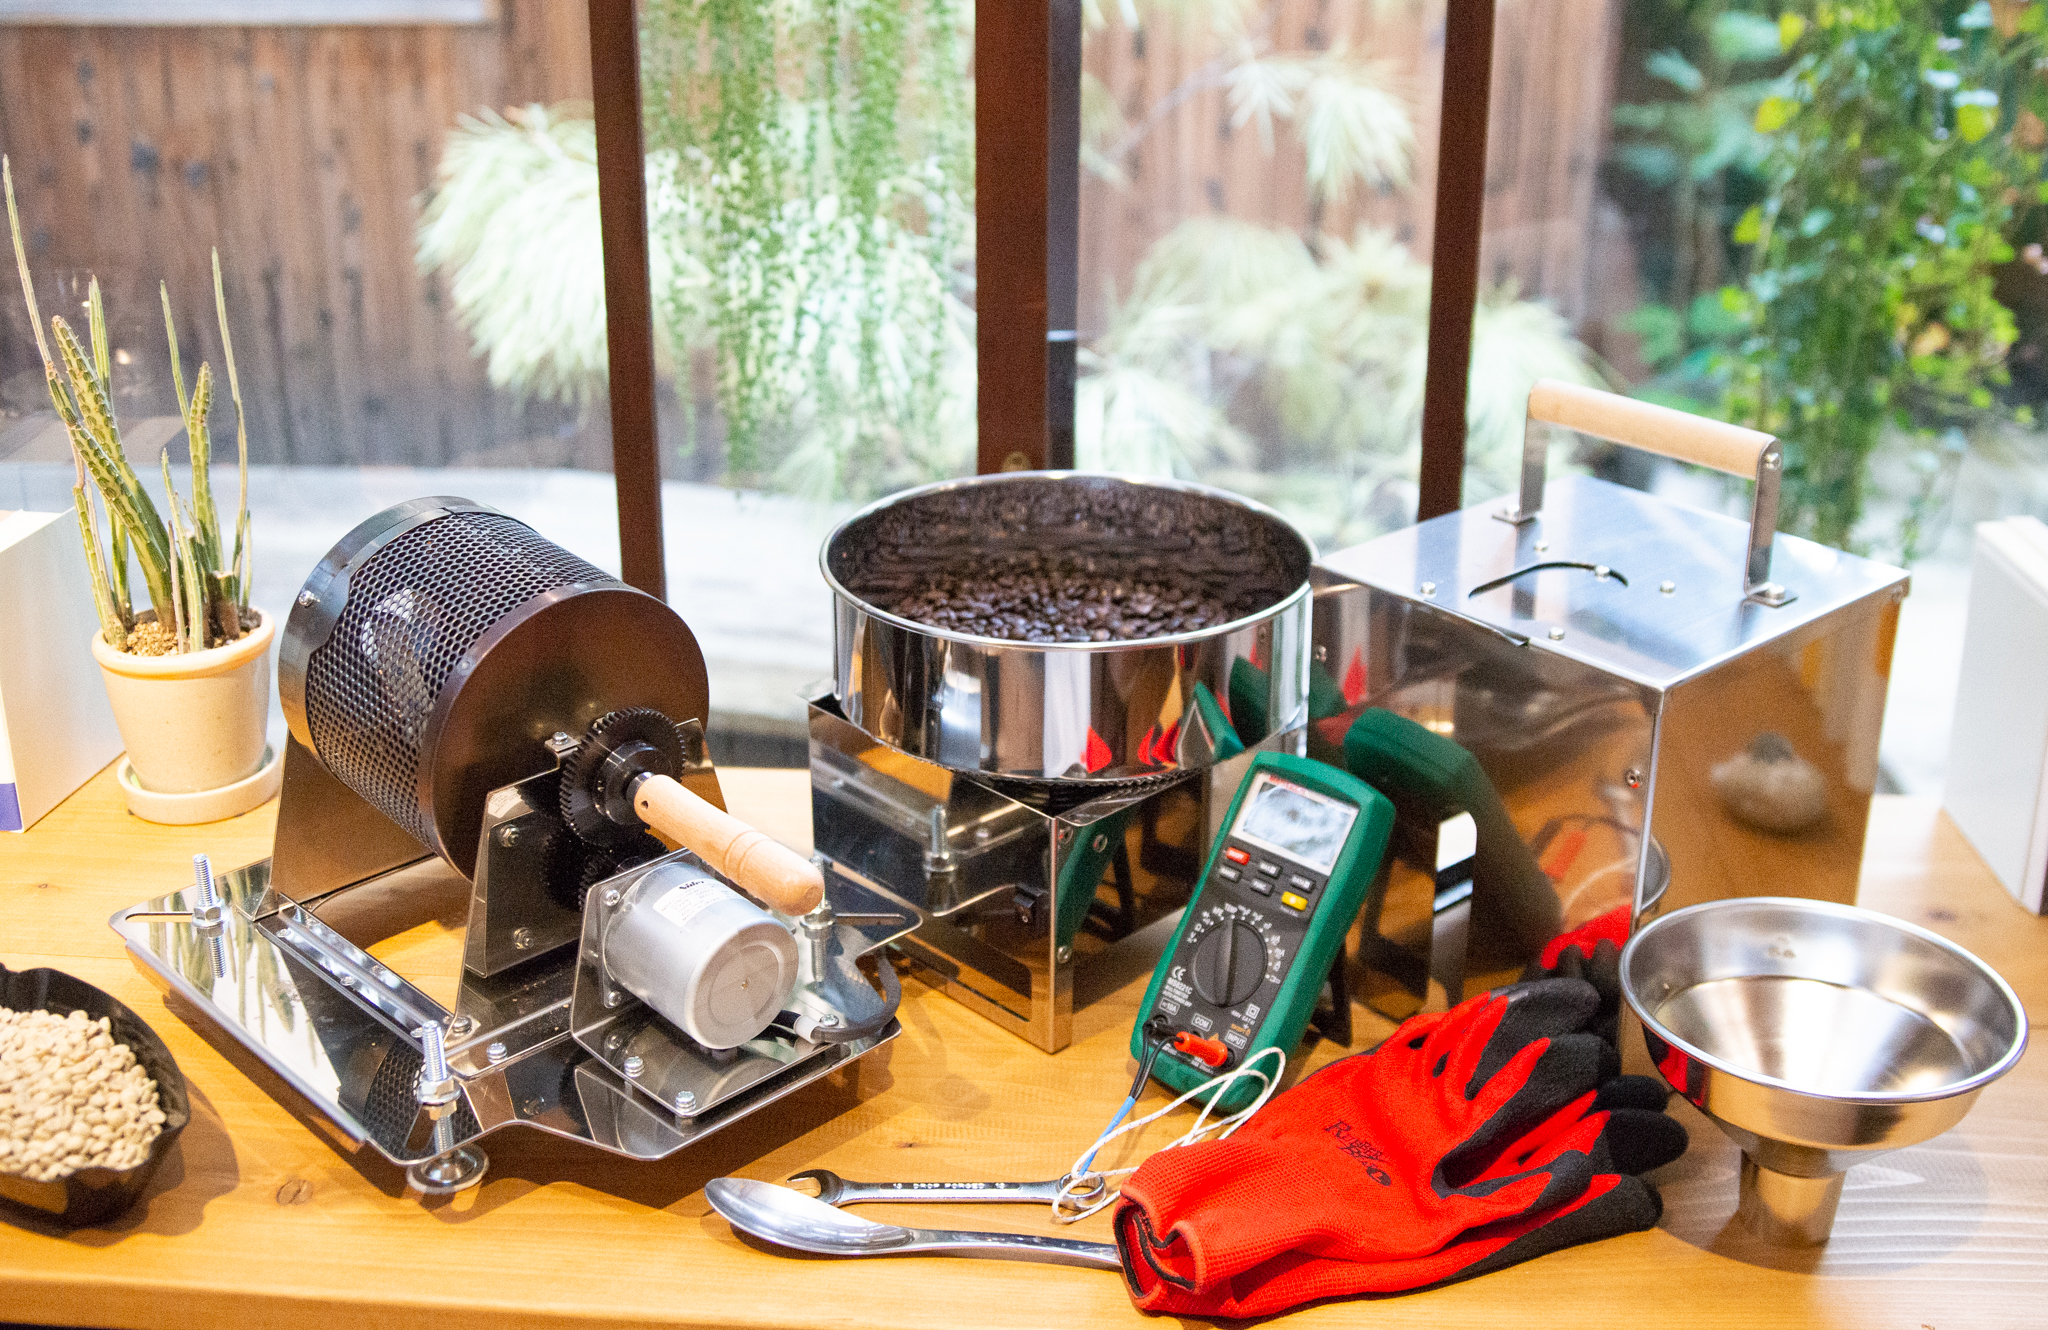 本格的な直火焙煎ができる小型焙煎機『グレイダー360』がリリースされました | 海ノ向こうコーヒー | 【生豆・卸】海ノ向こうコーヒー |  遠くに想いを馳せる、想像力を。